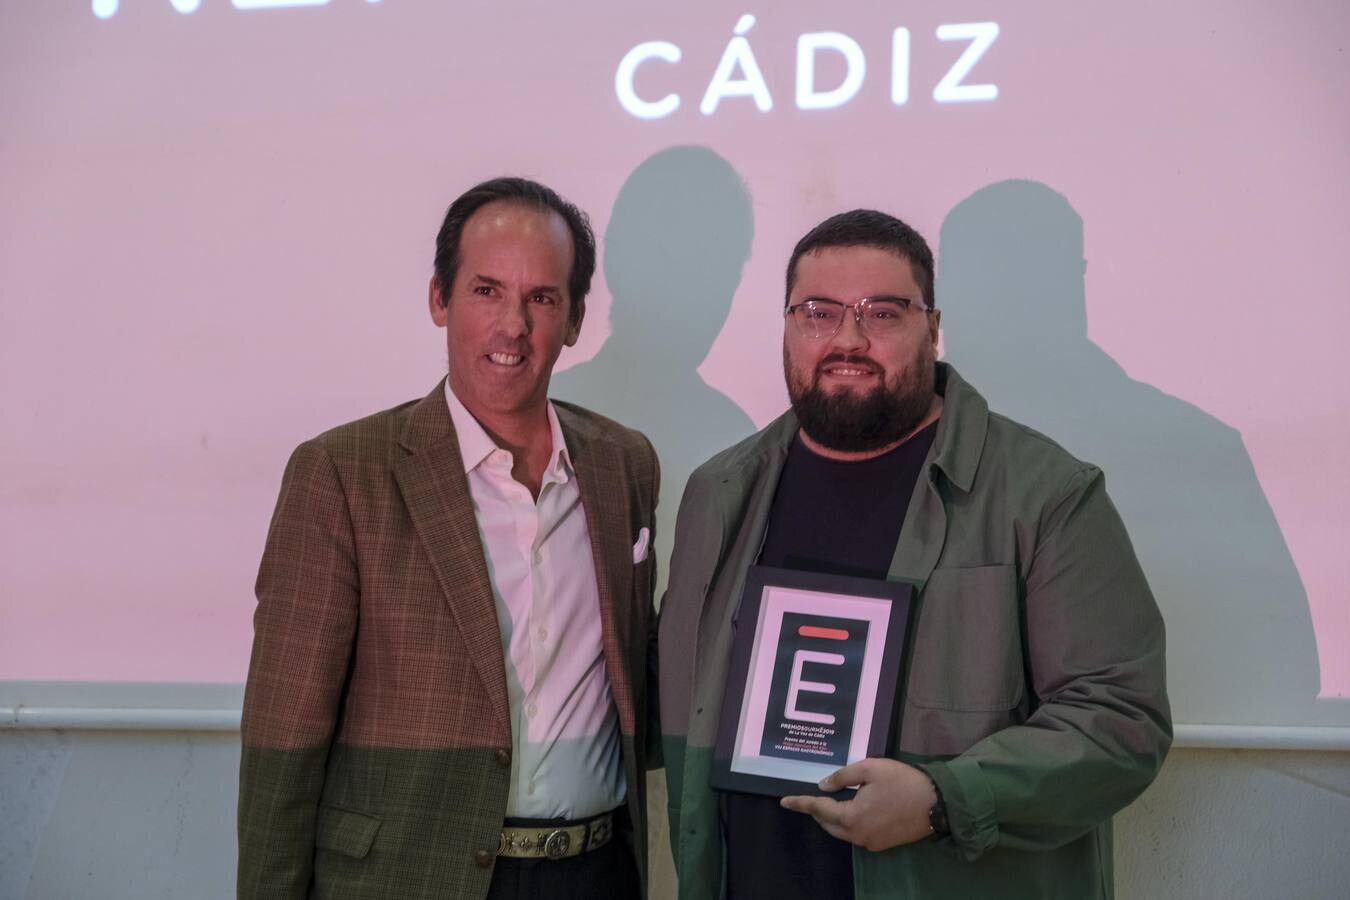 En imágenes: Entrega de los Premios Gurmé Cádiz 2019